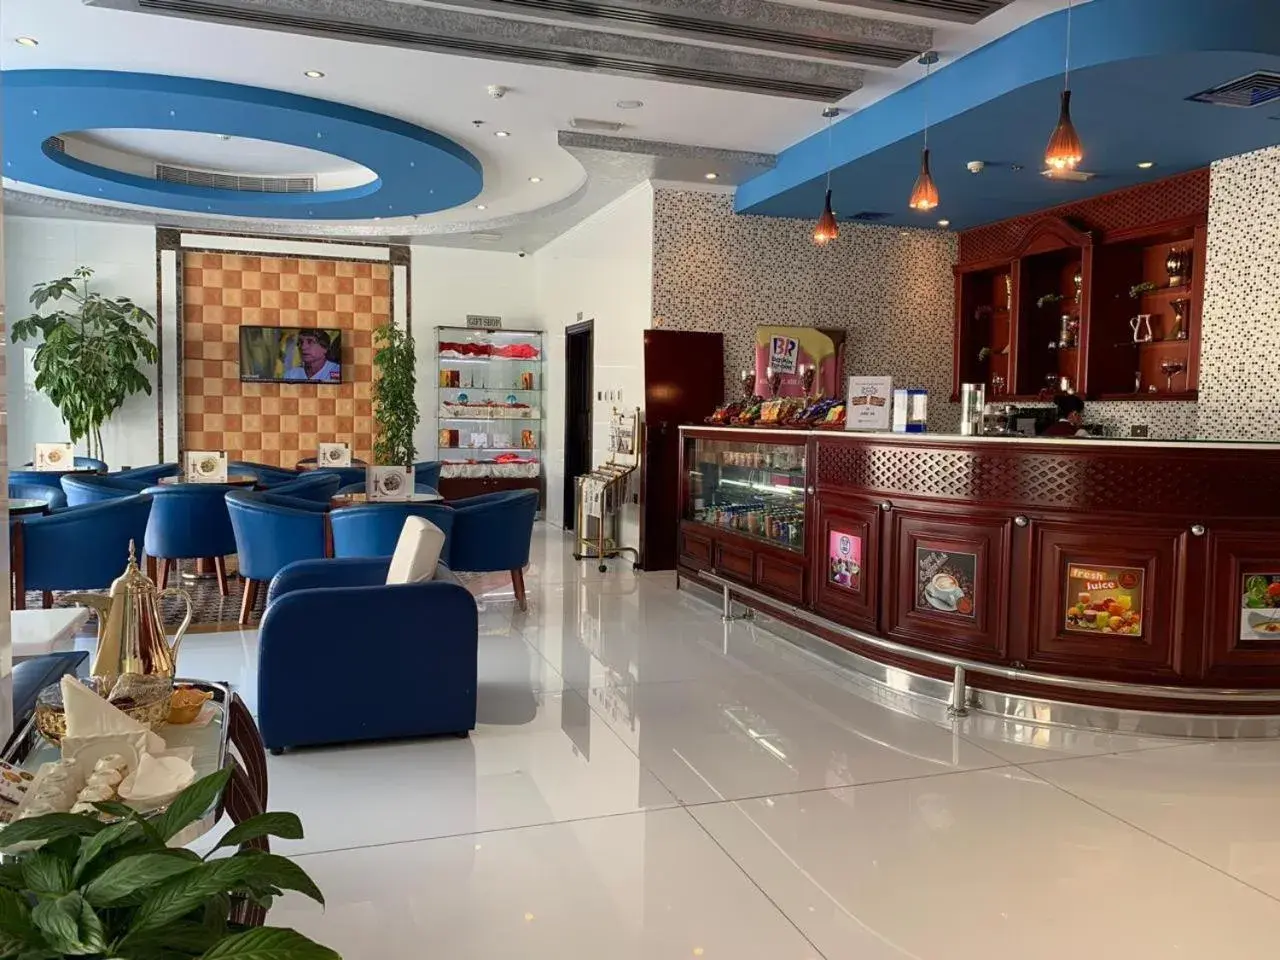 Lobby or reception in Hala Inn Hotel Apartments - BAITHANS